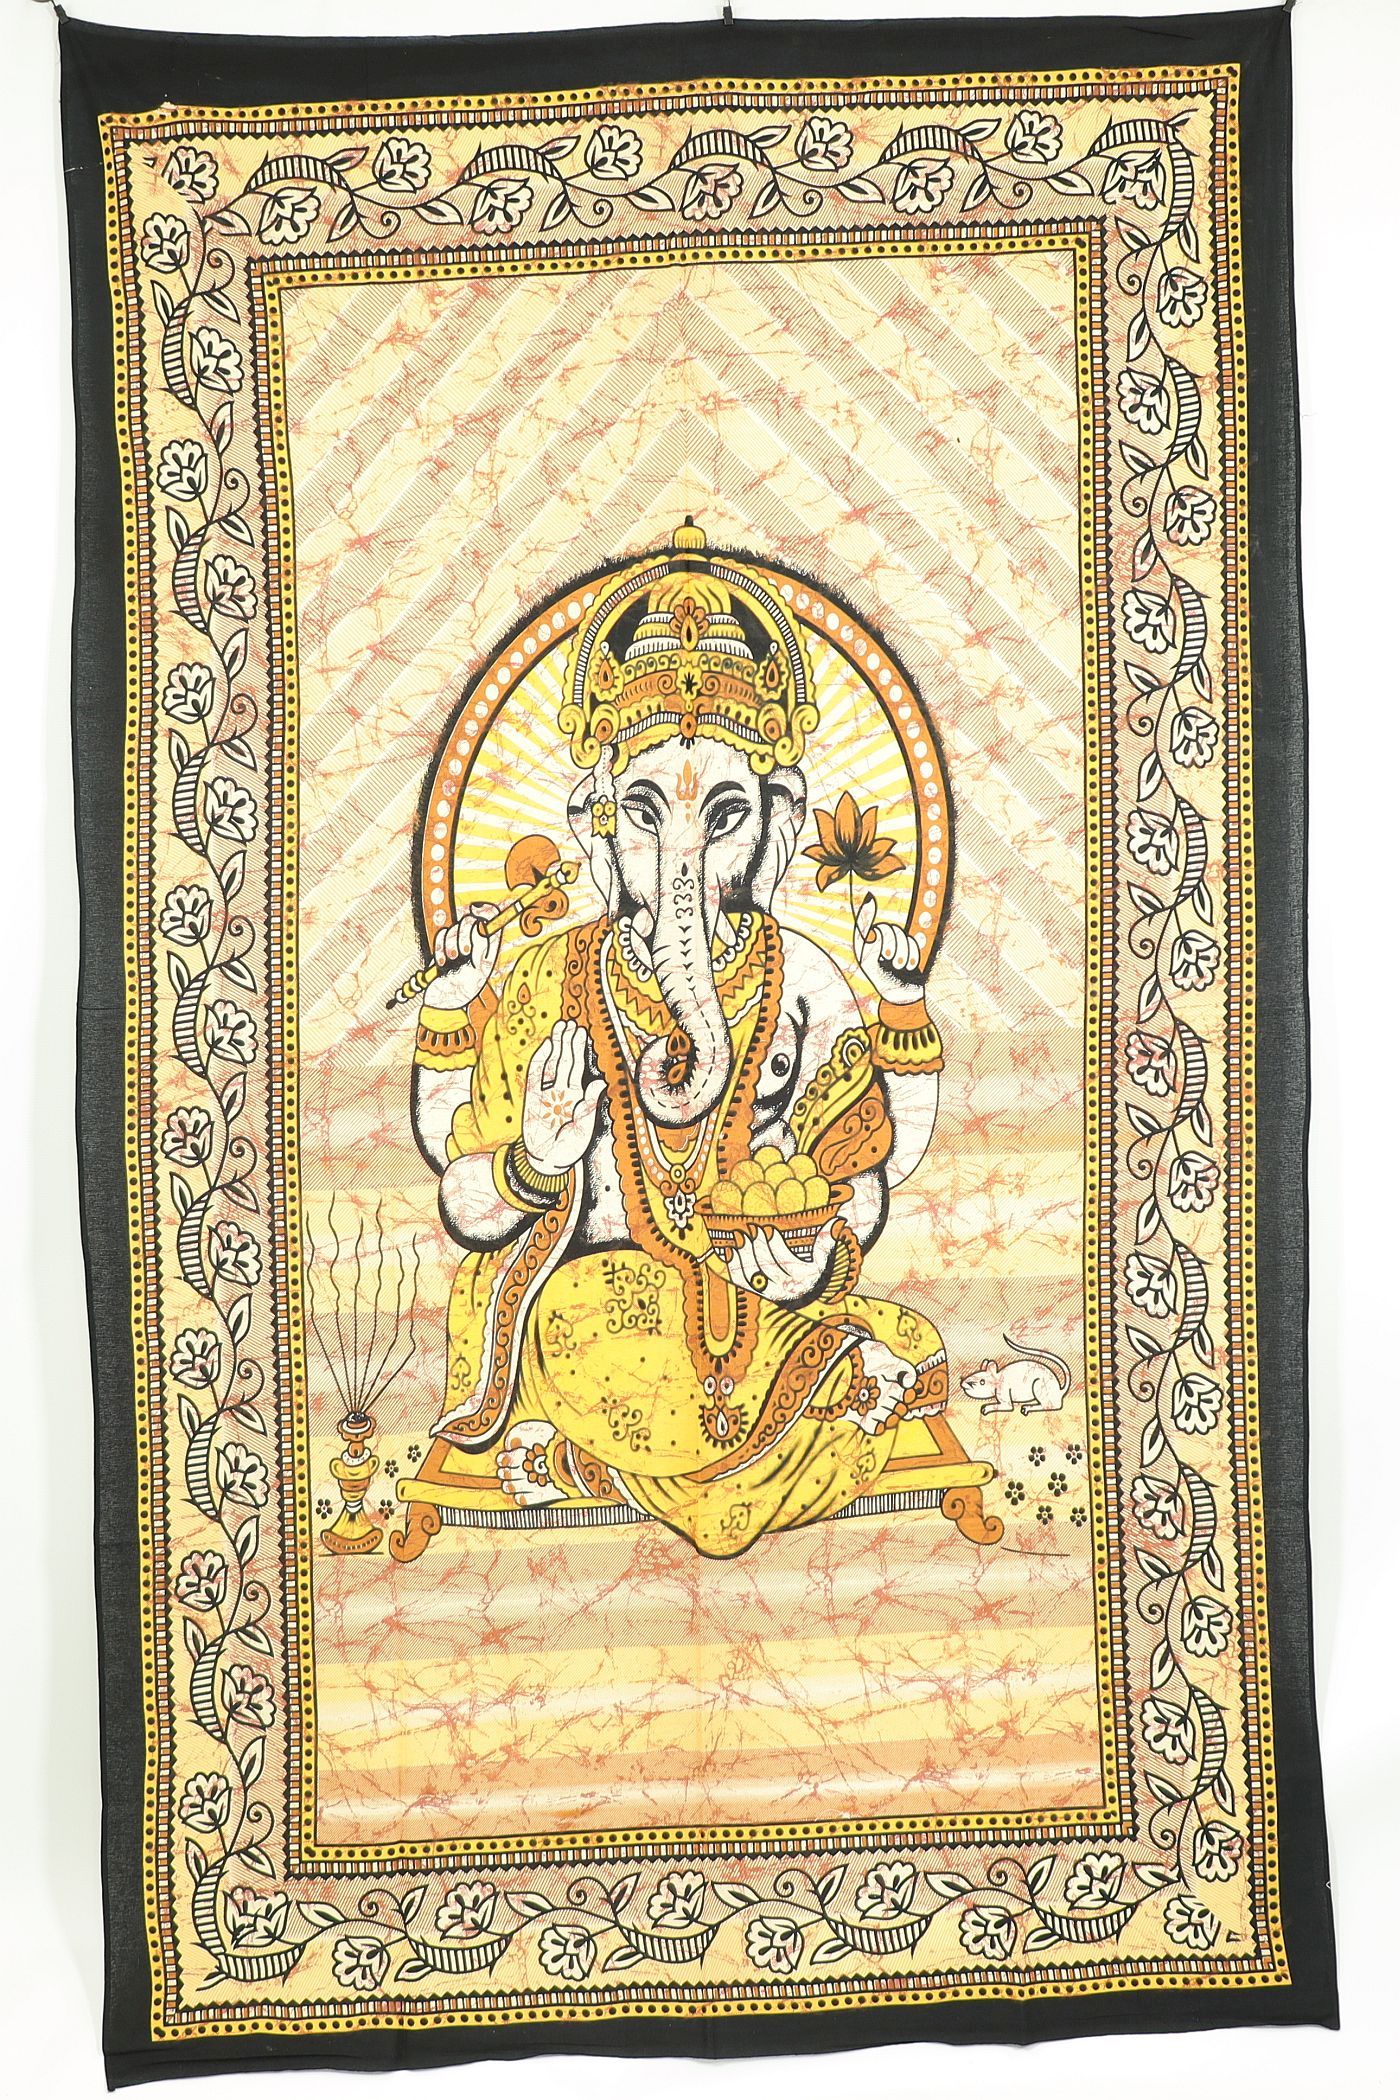 Wandtuch XL 130x210 - Ganesha - 100% Baumwolle - detailreicher indischer Druck - dekoratives Tuch, Wandbild, Tagesdecke, Bedcover, Vorhang, Picknick-Decke, Strandtuch